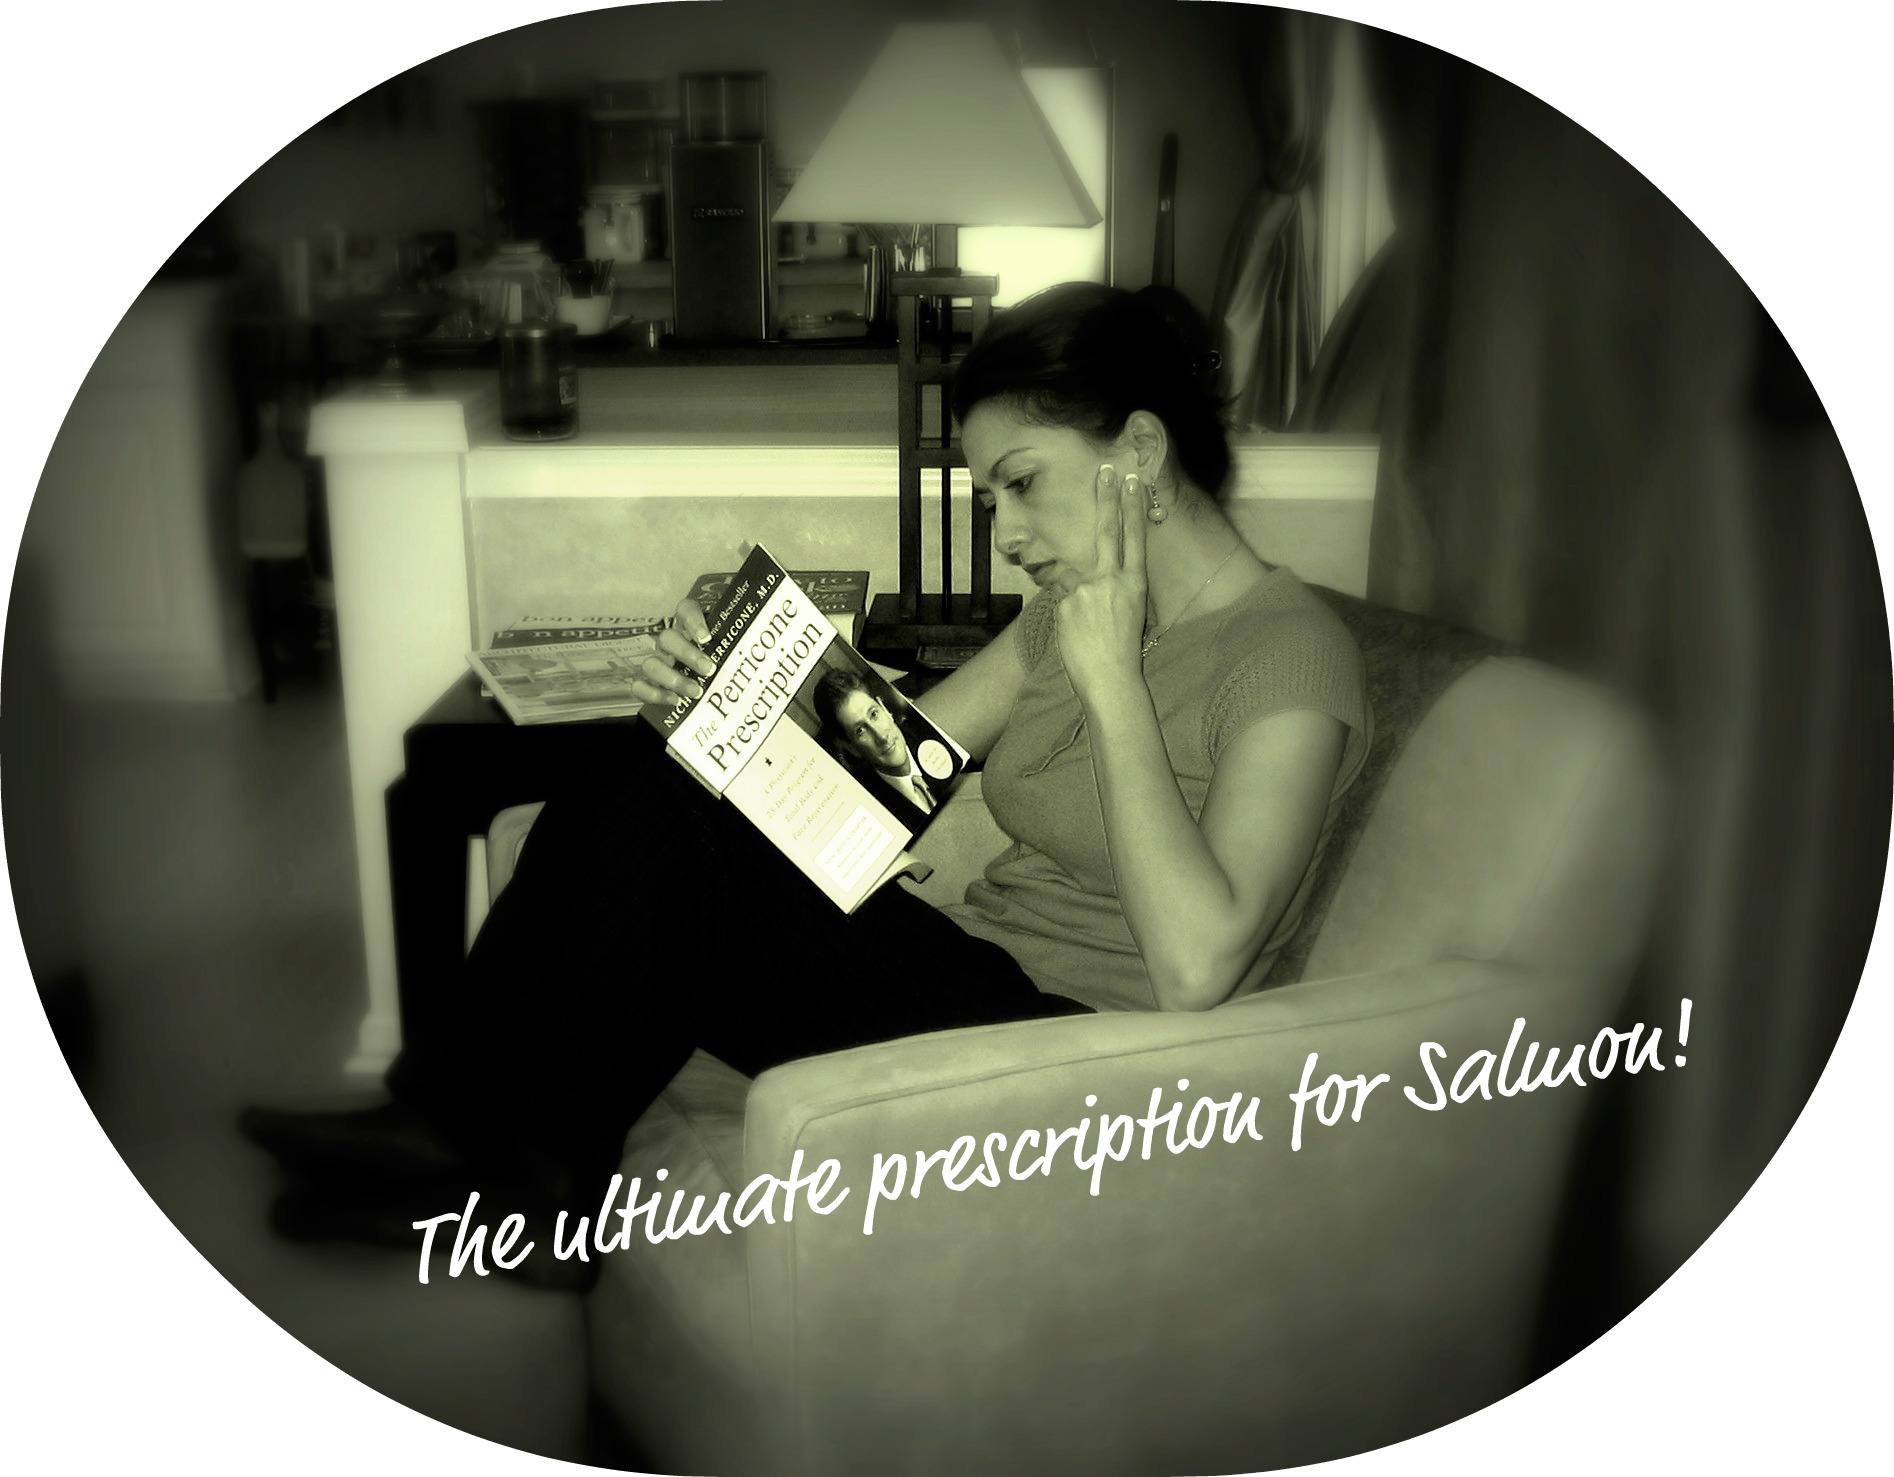 Perricone Prescription, reading at Home